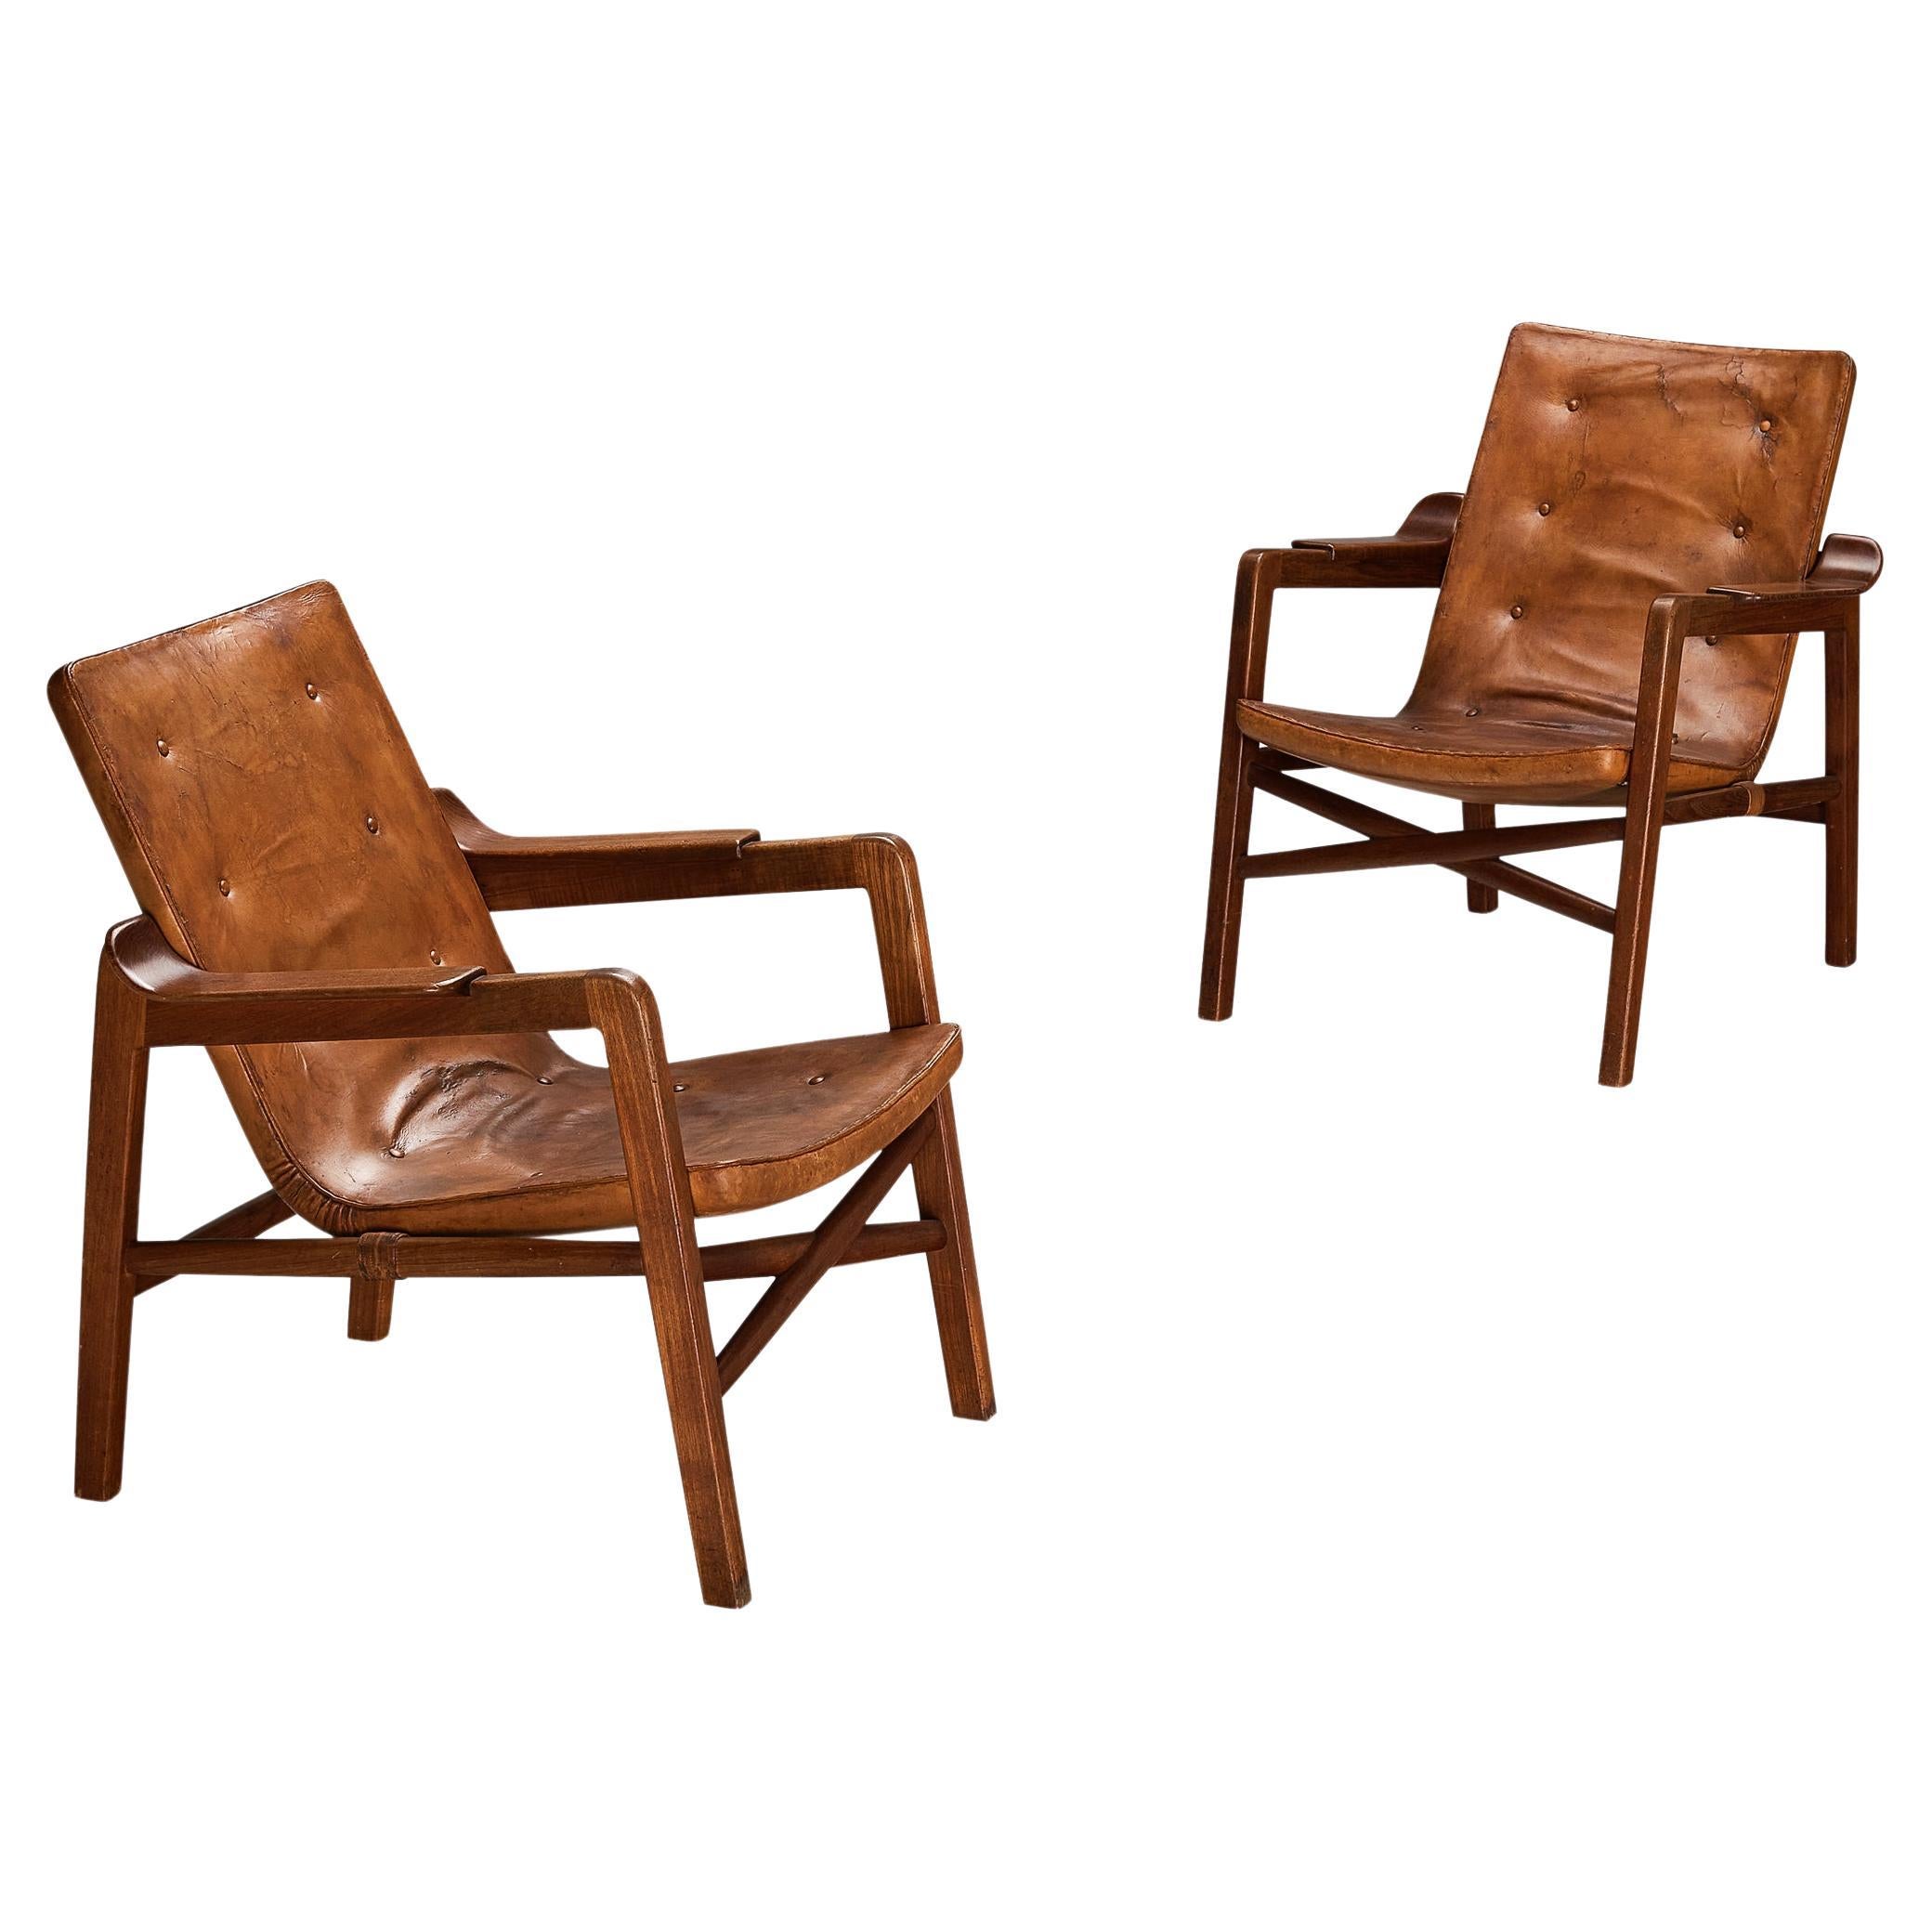 Tove & Edvard Kindt-Larsen paire de fauteuils "Fireside" en cuir d'origine 